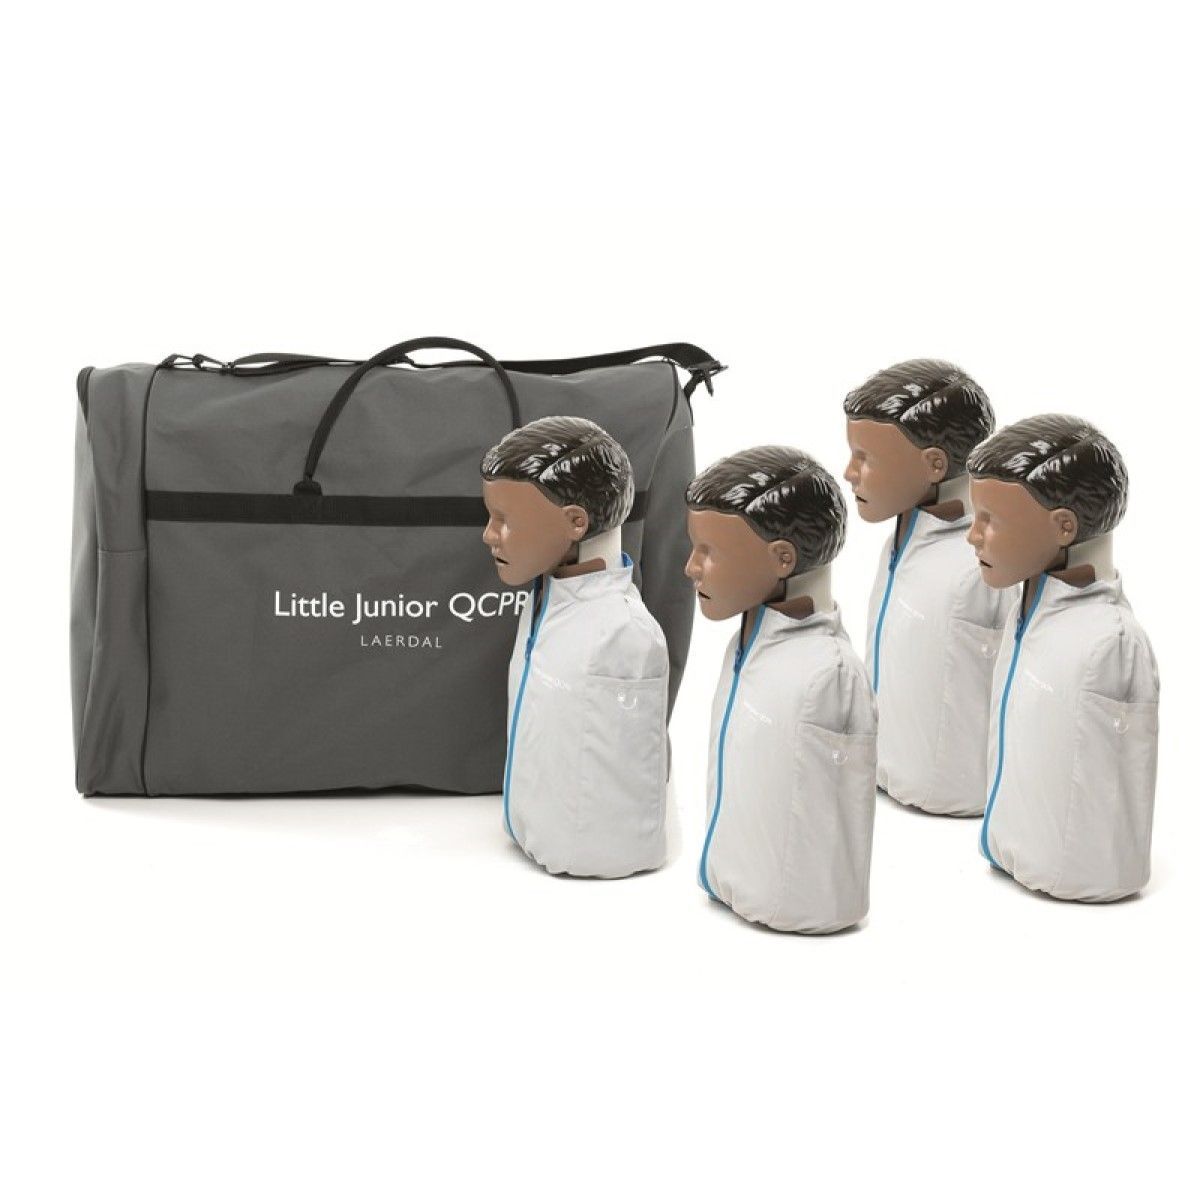 Laerdal Little Junior QCPR 4-pack, donkere huid